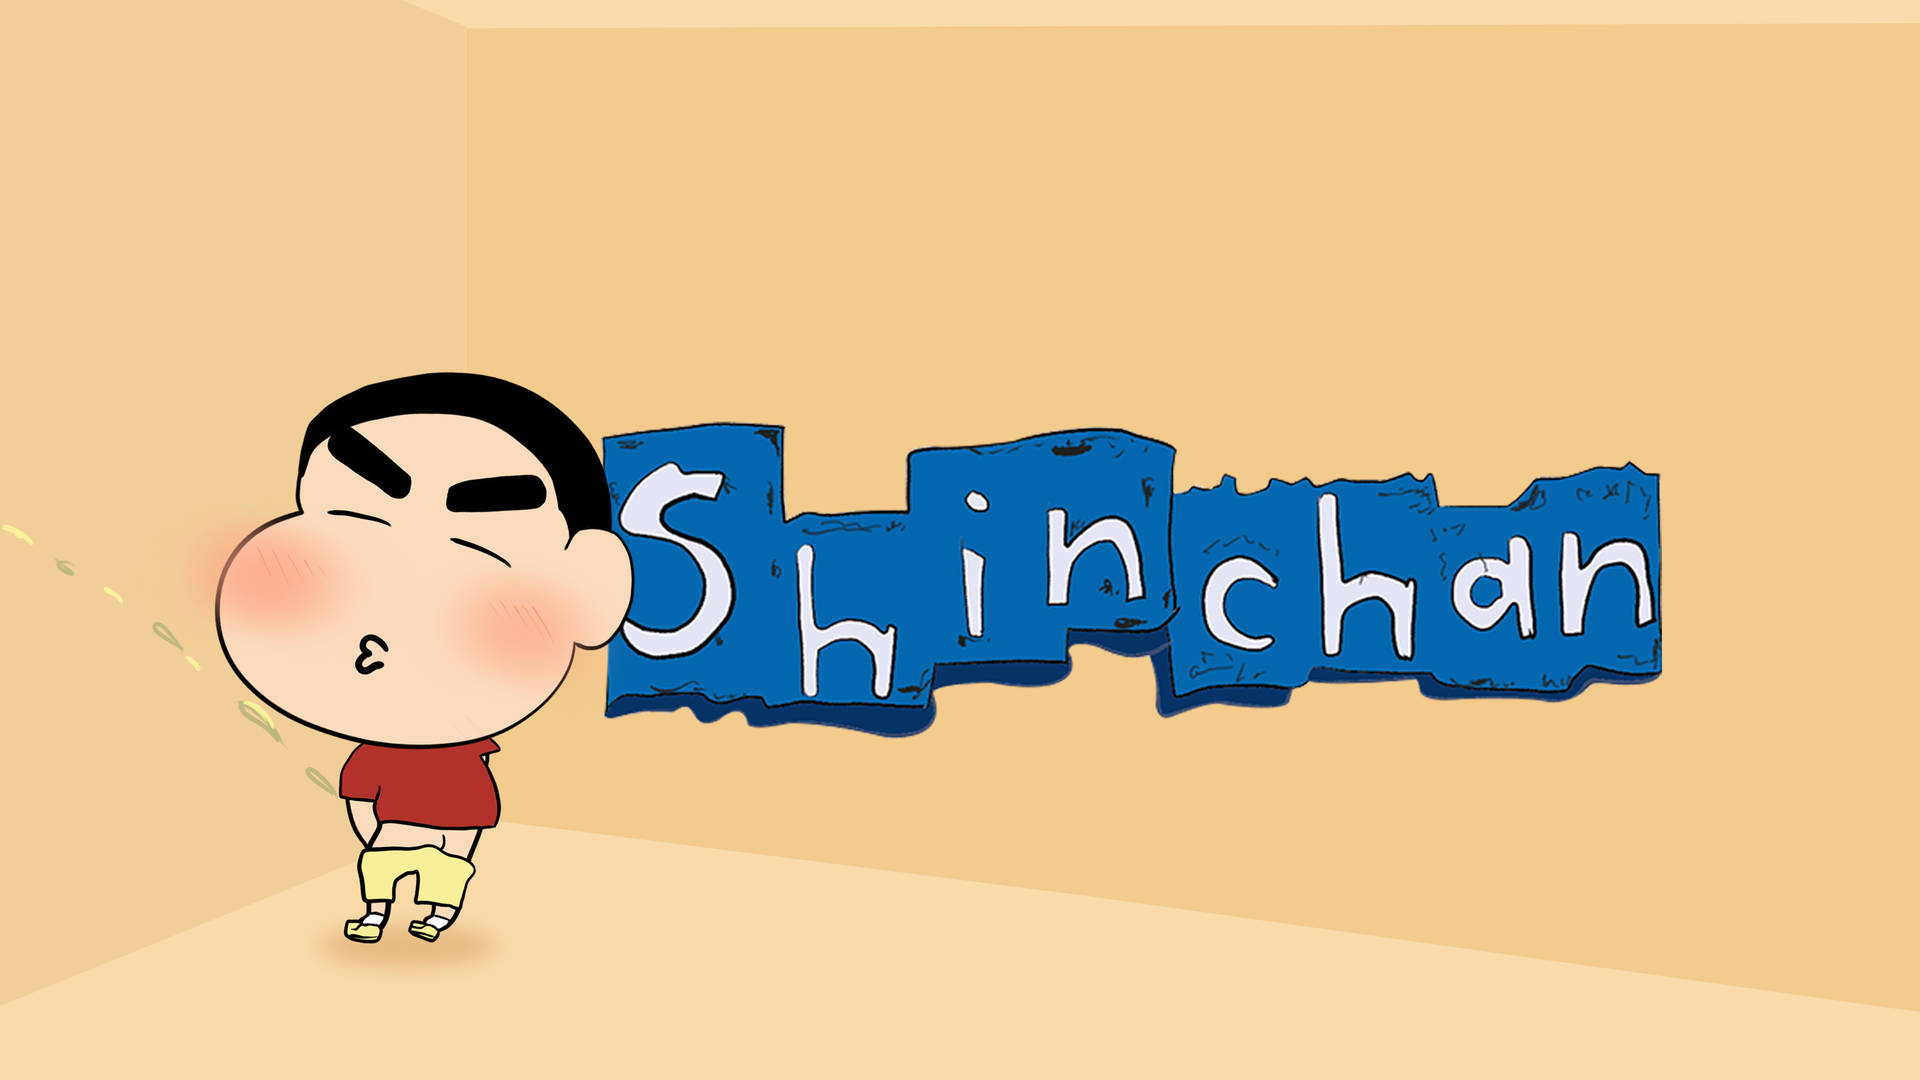 Peeing Shin Chan Cartoon Logo Wallpaper